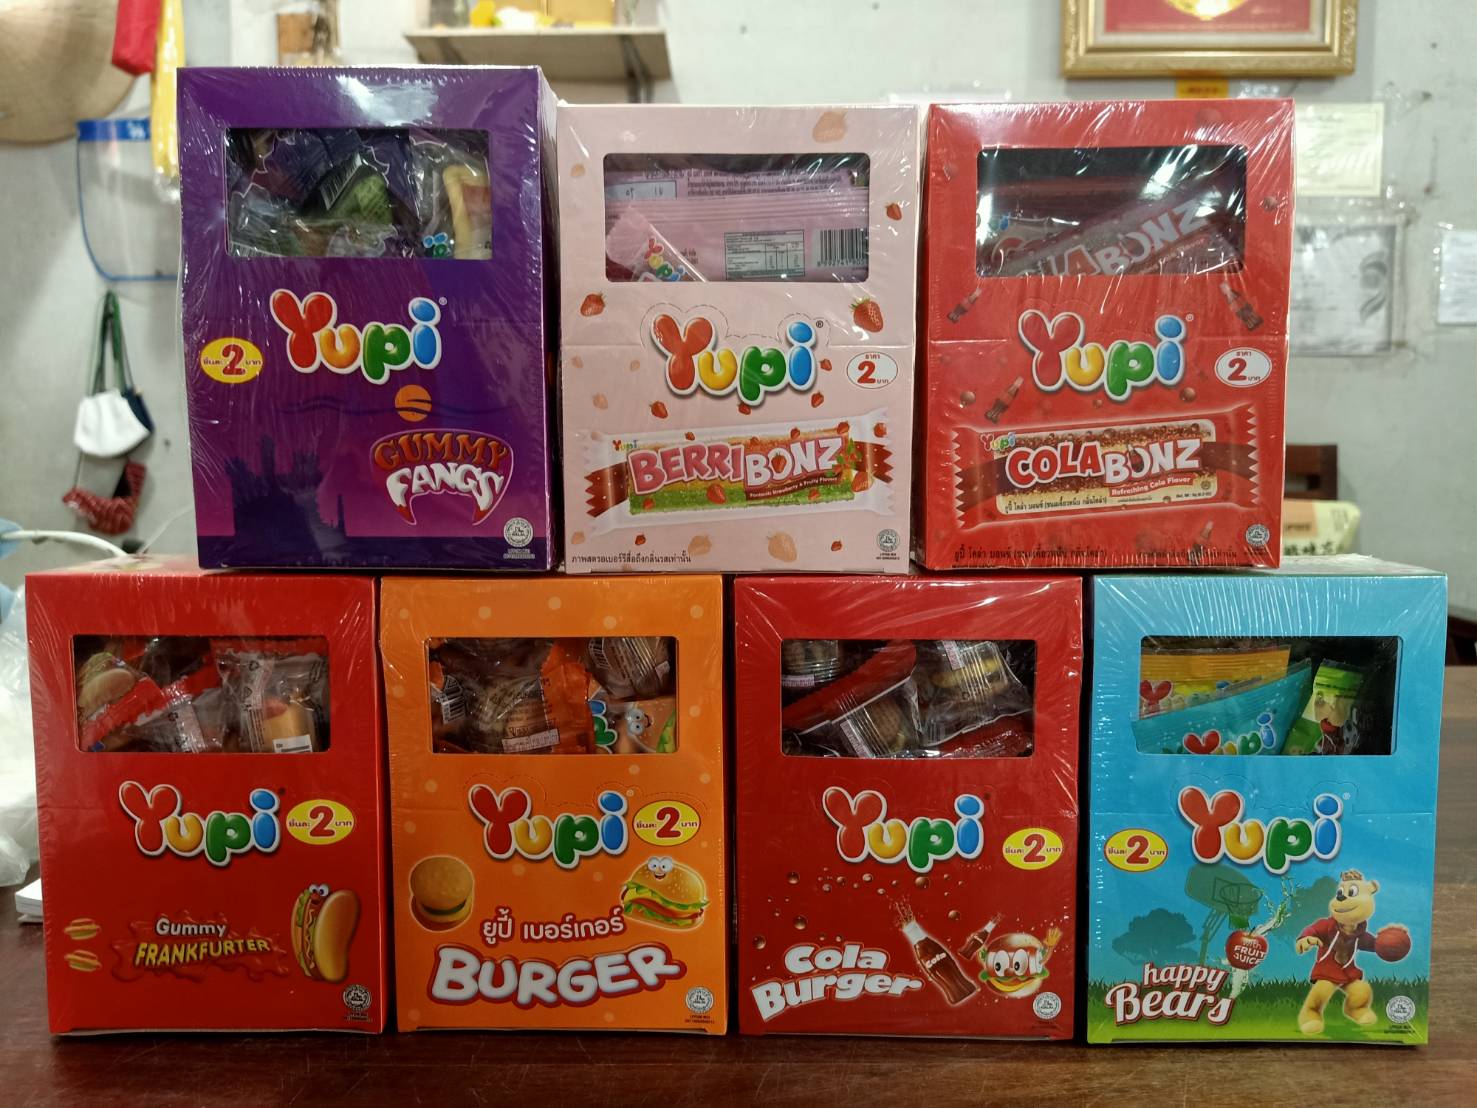 Yupi เยลลี่ยูปี้ 1กล่อง บรรจุ 24 ชิ้น 1 box of Yupi jelly, contains 24 pieces